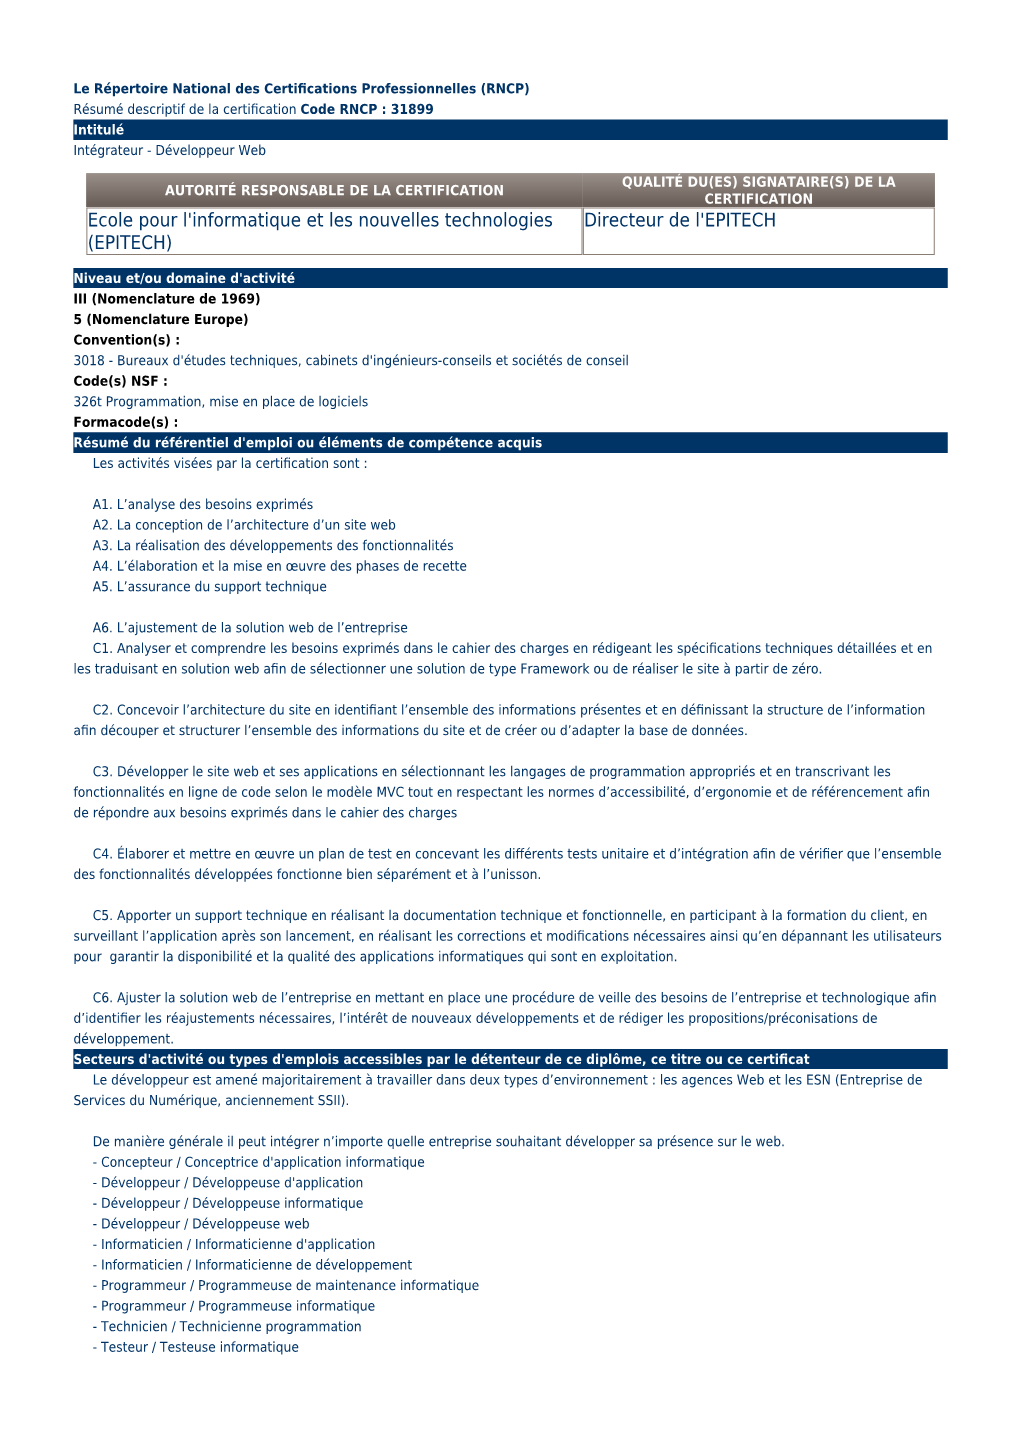 RNCP) (Résumé Descriptif De La Certification